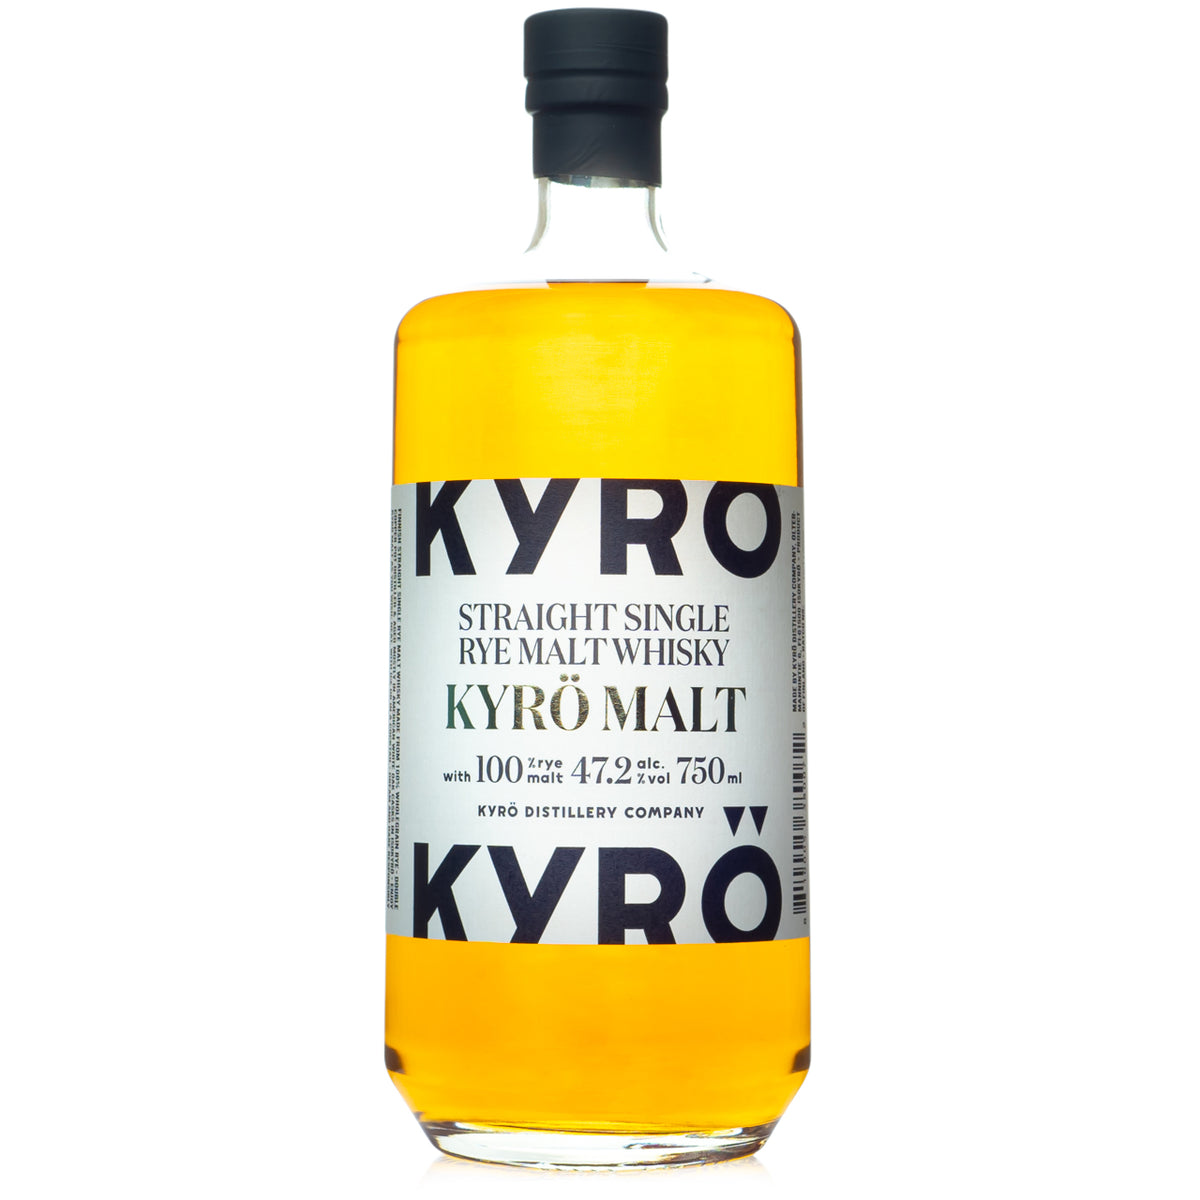 & Bitters Whisky Bottles Kyro Malt — Single Rye